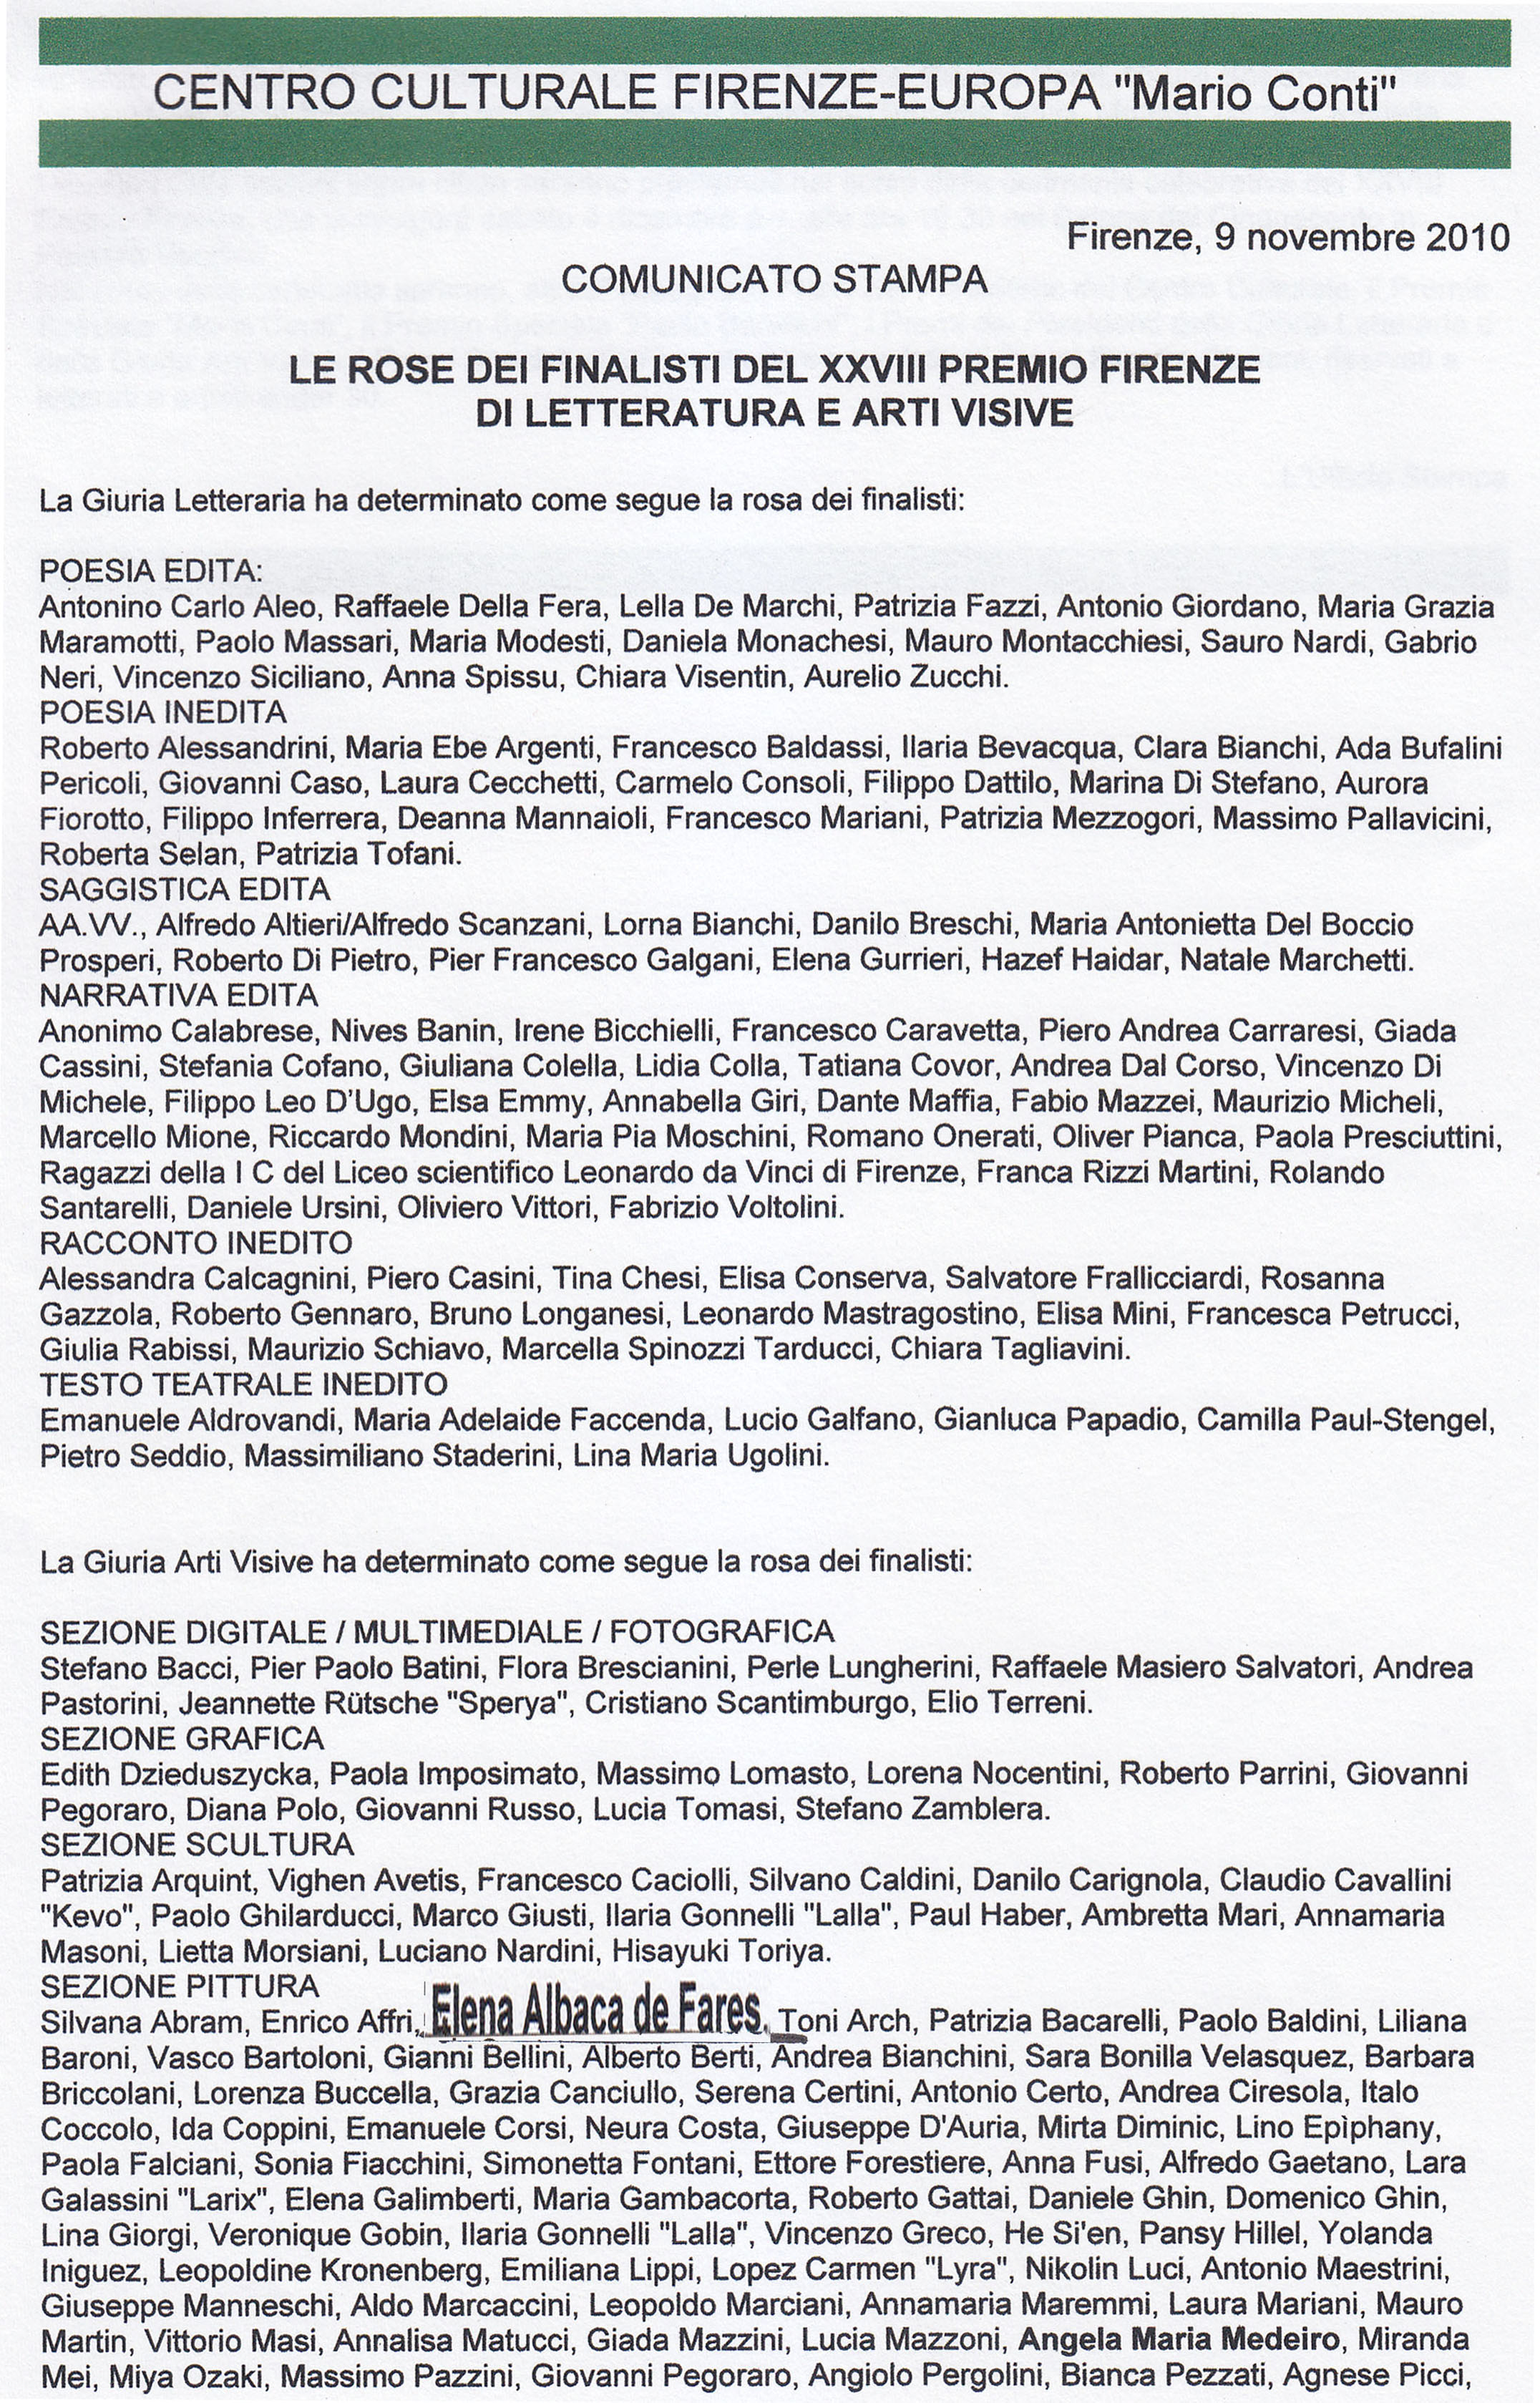 Listado de finalistas de una exposición en Italia en la que aparece la Profesora Elena Albaca de Fares.